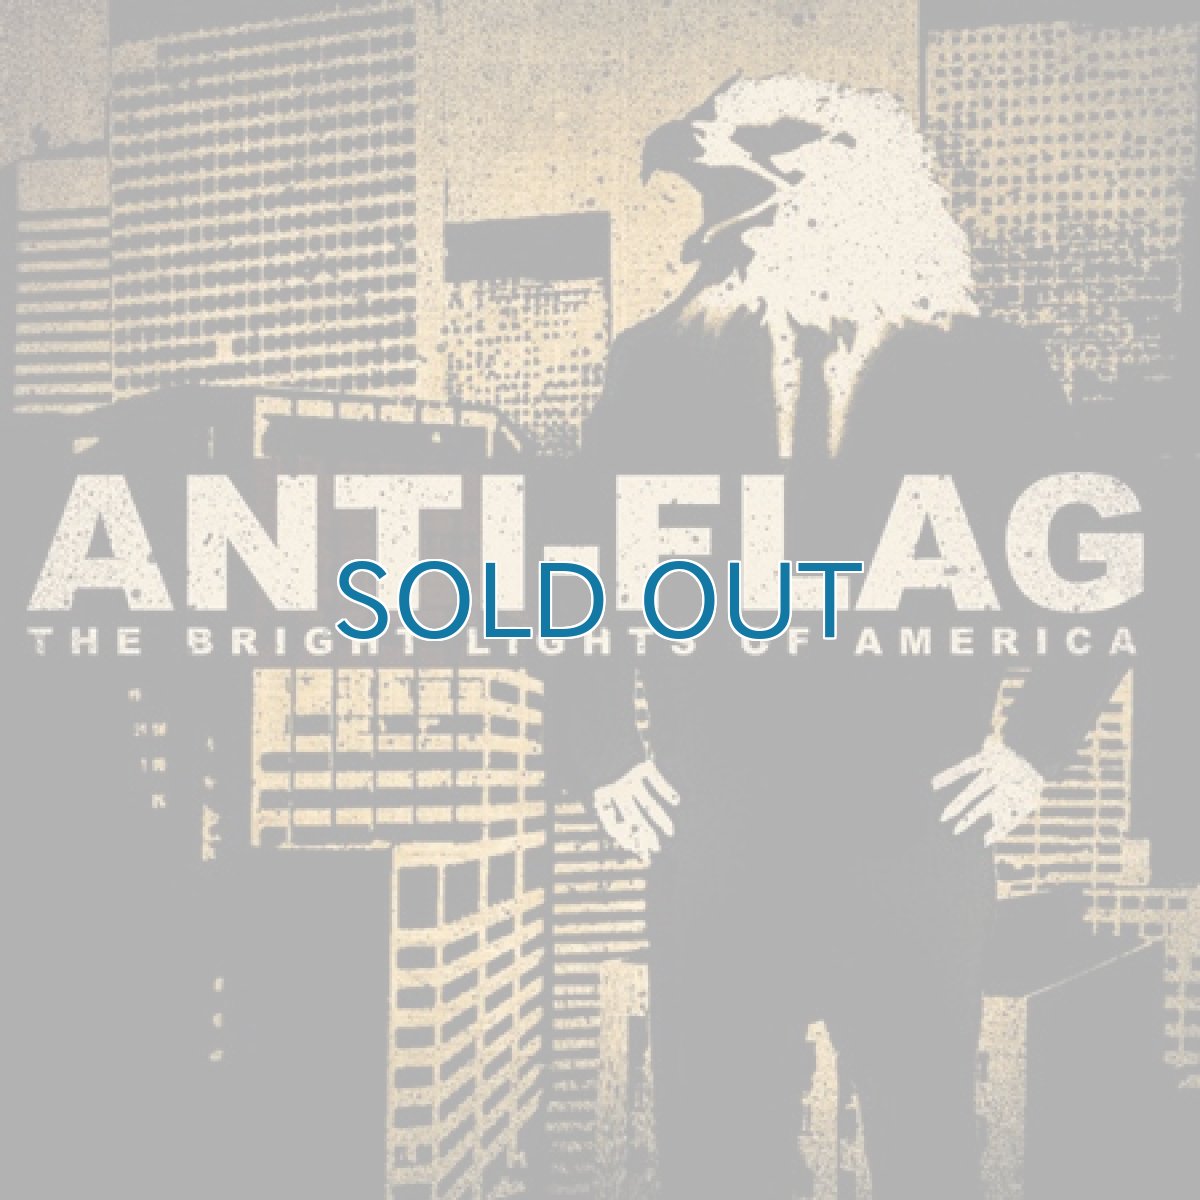 画像1: Anti-Flag / Bright Lights of America (1)